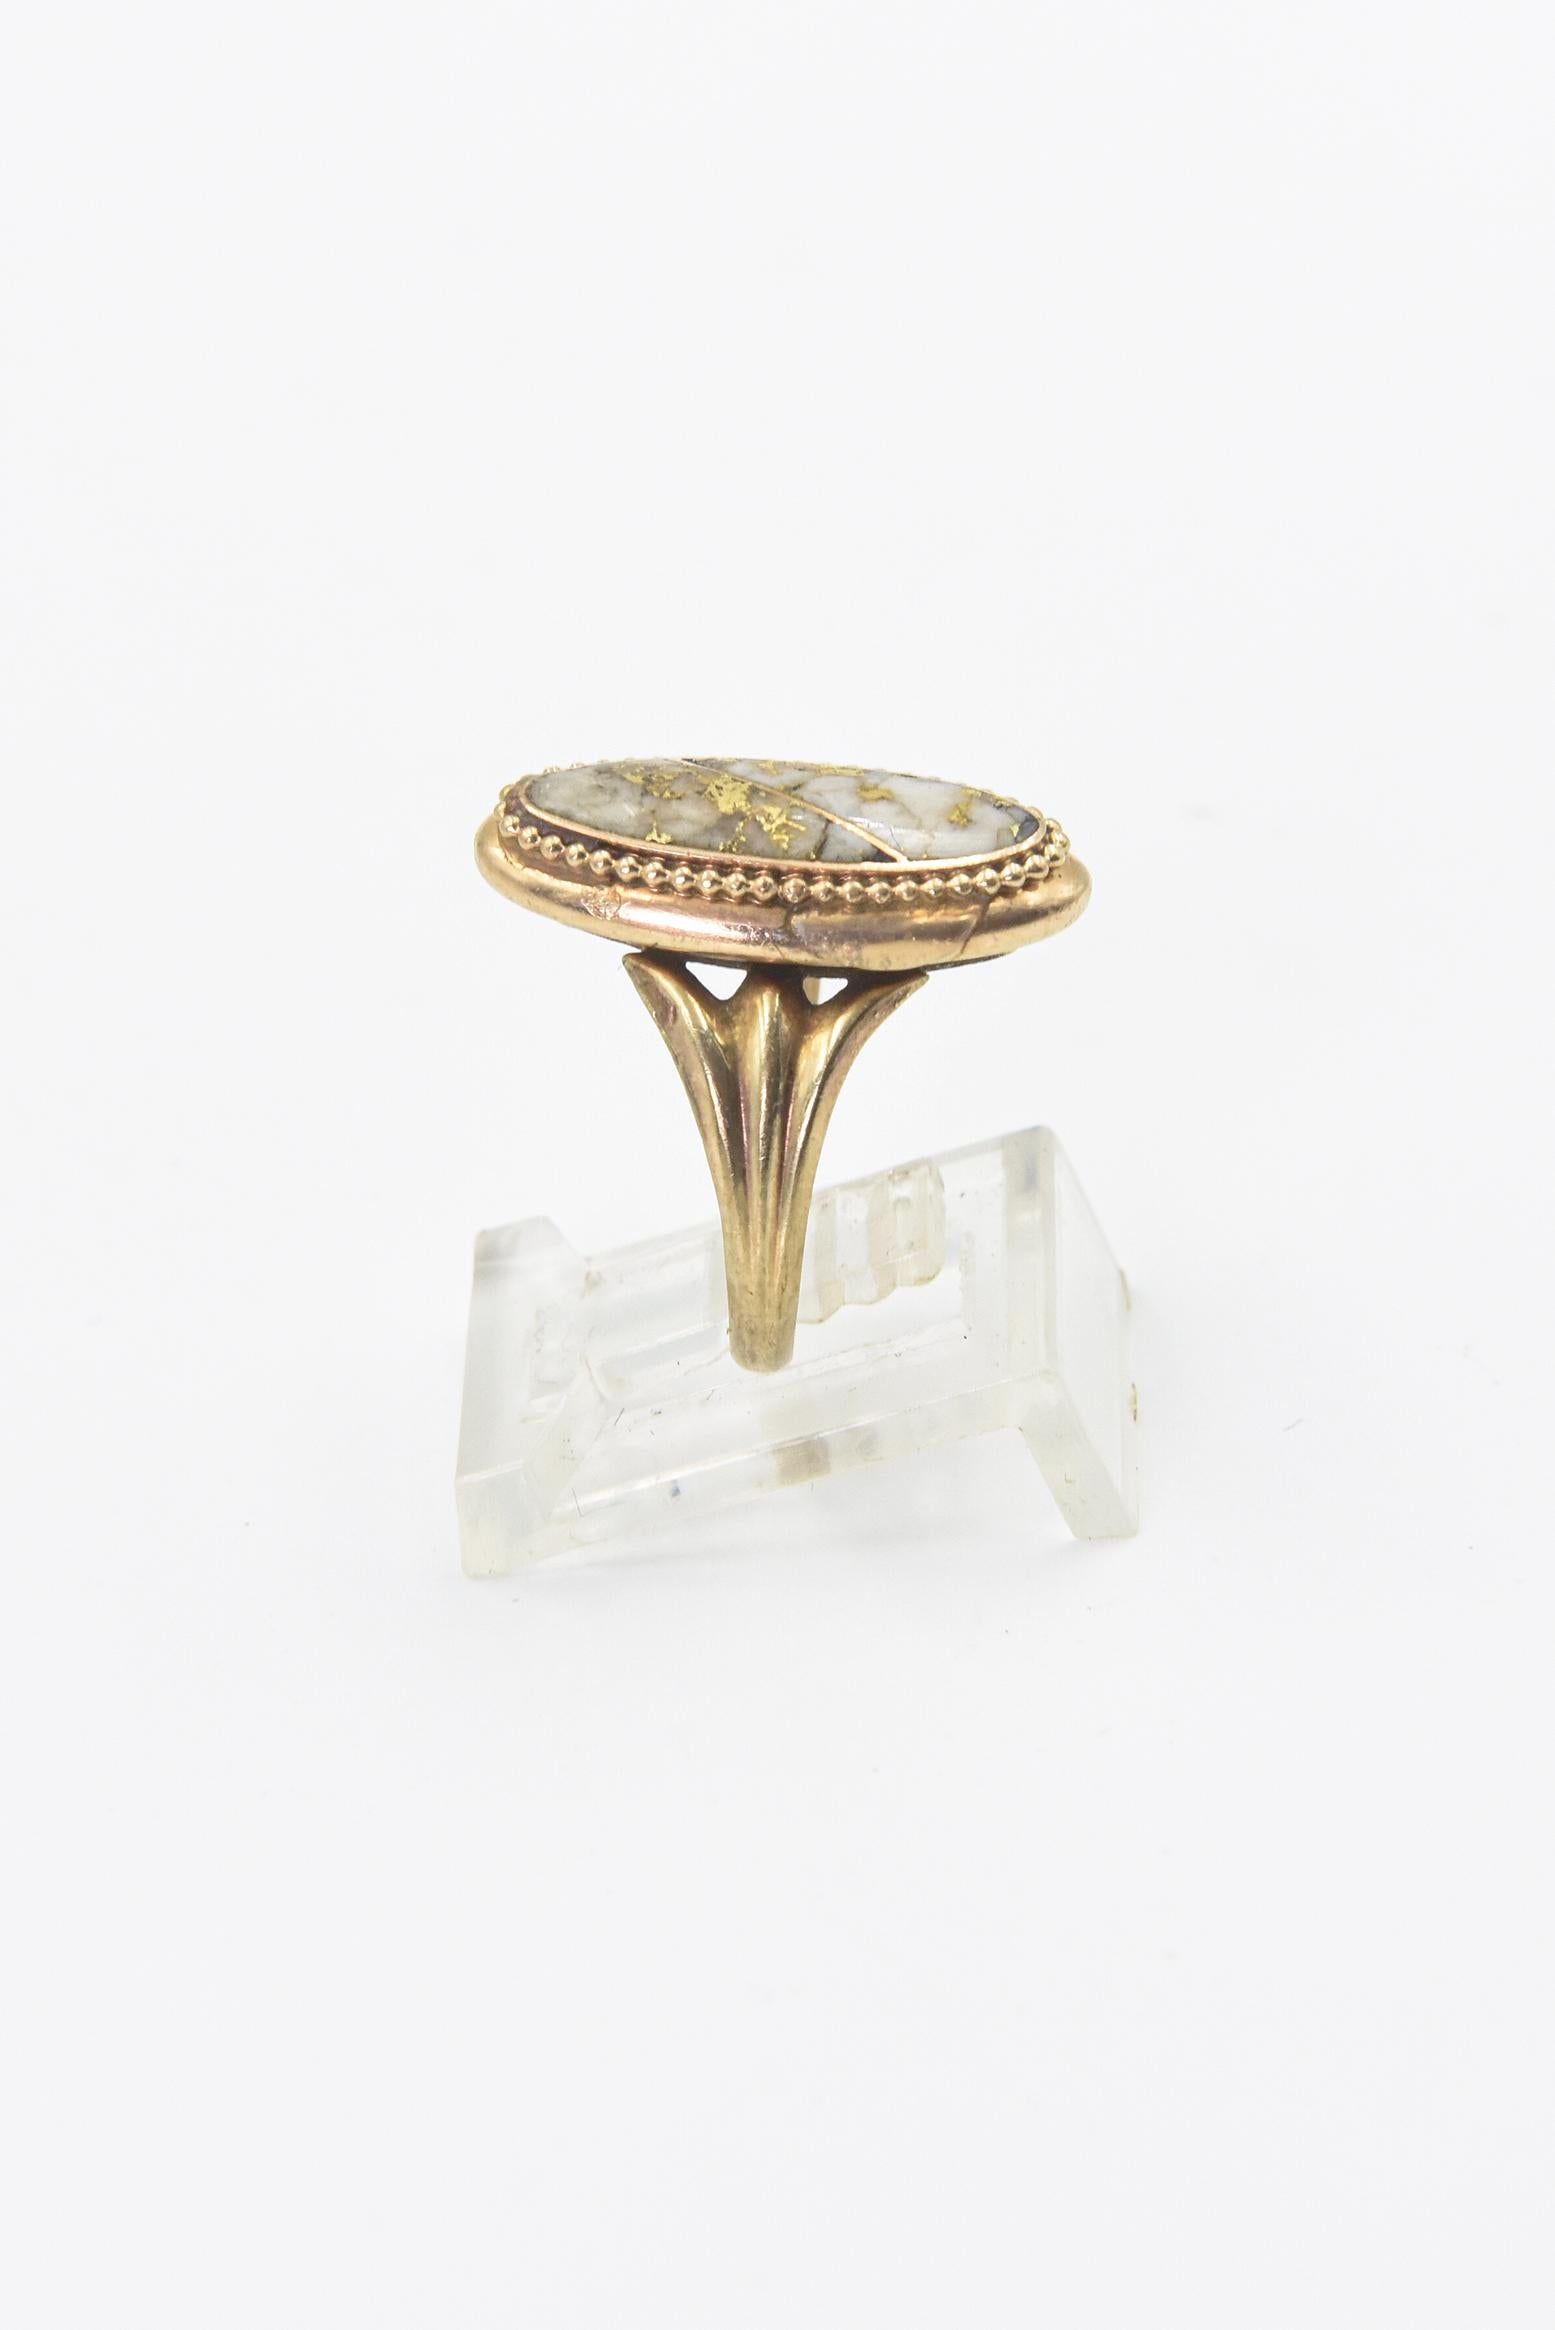 Rare Antique Gold Quartz Gold Ring For Sale 2